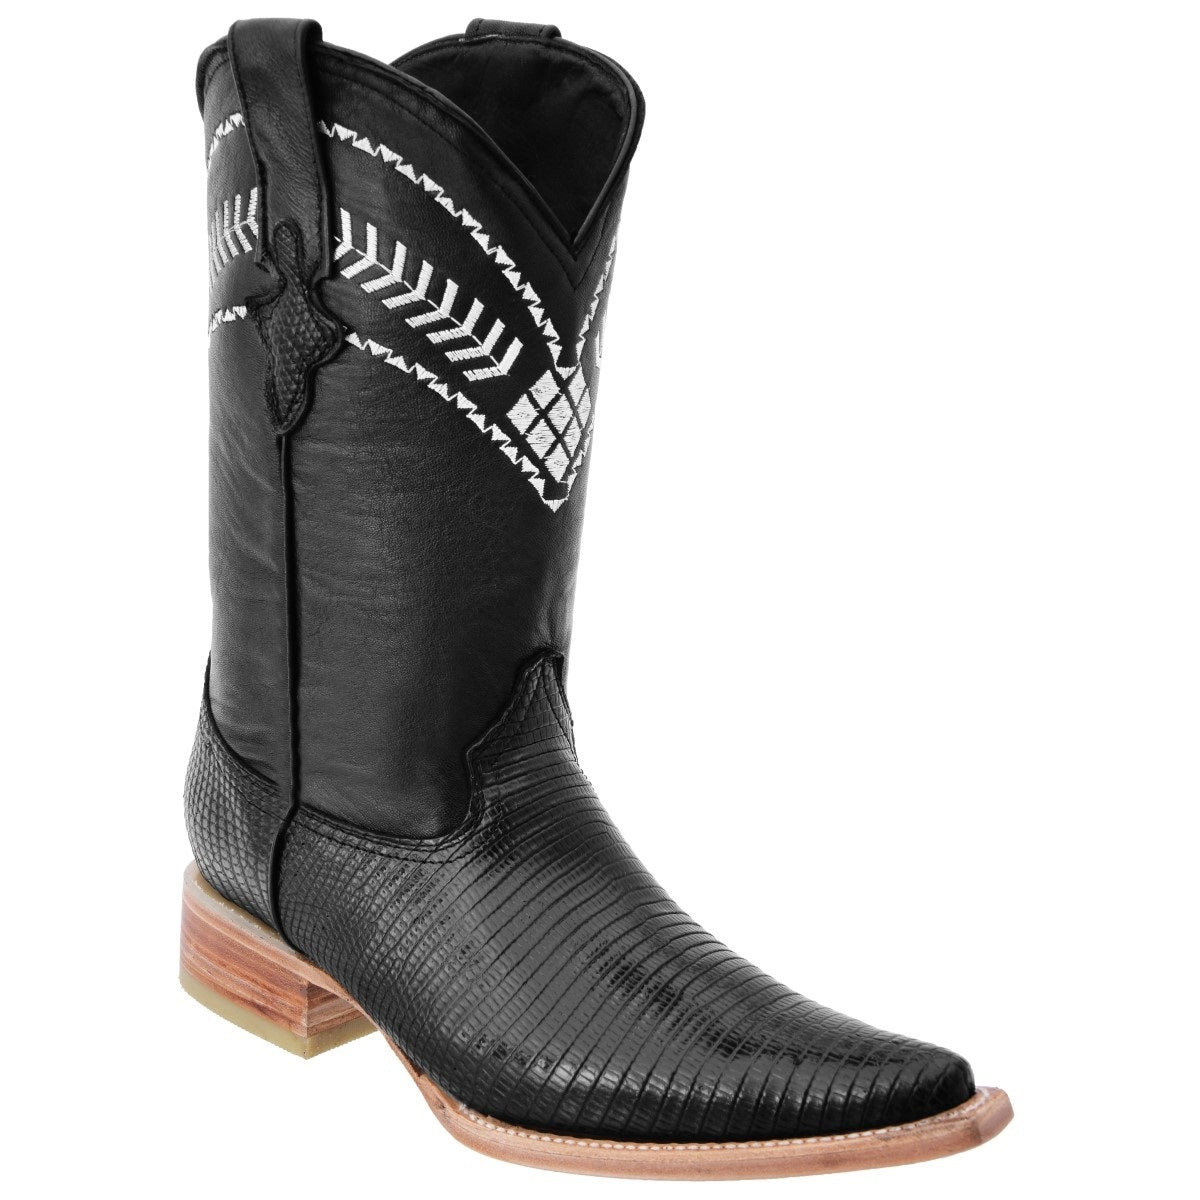 Botas Vaqueras TM-WD0068 - Western Boots